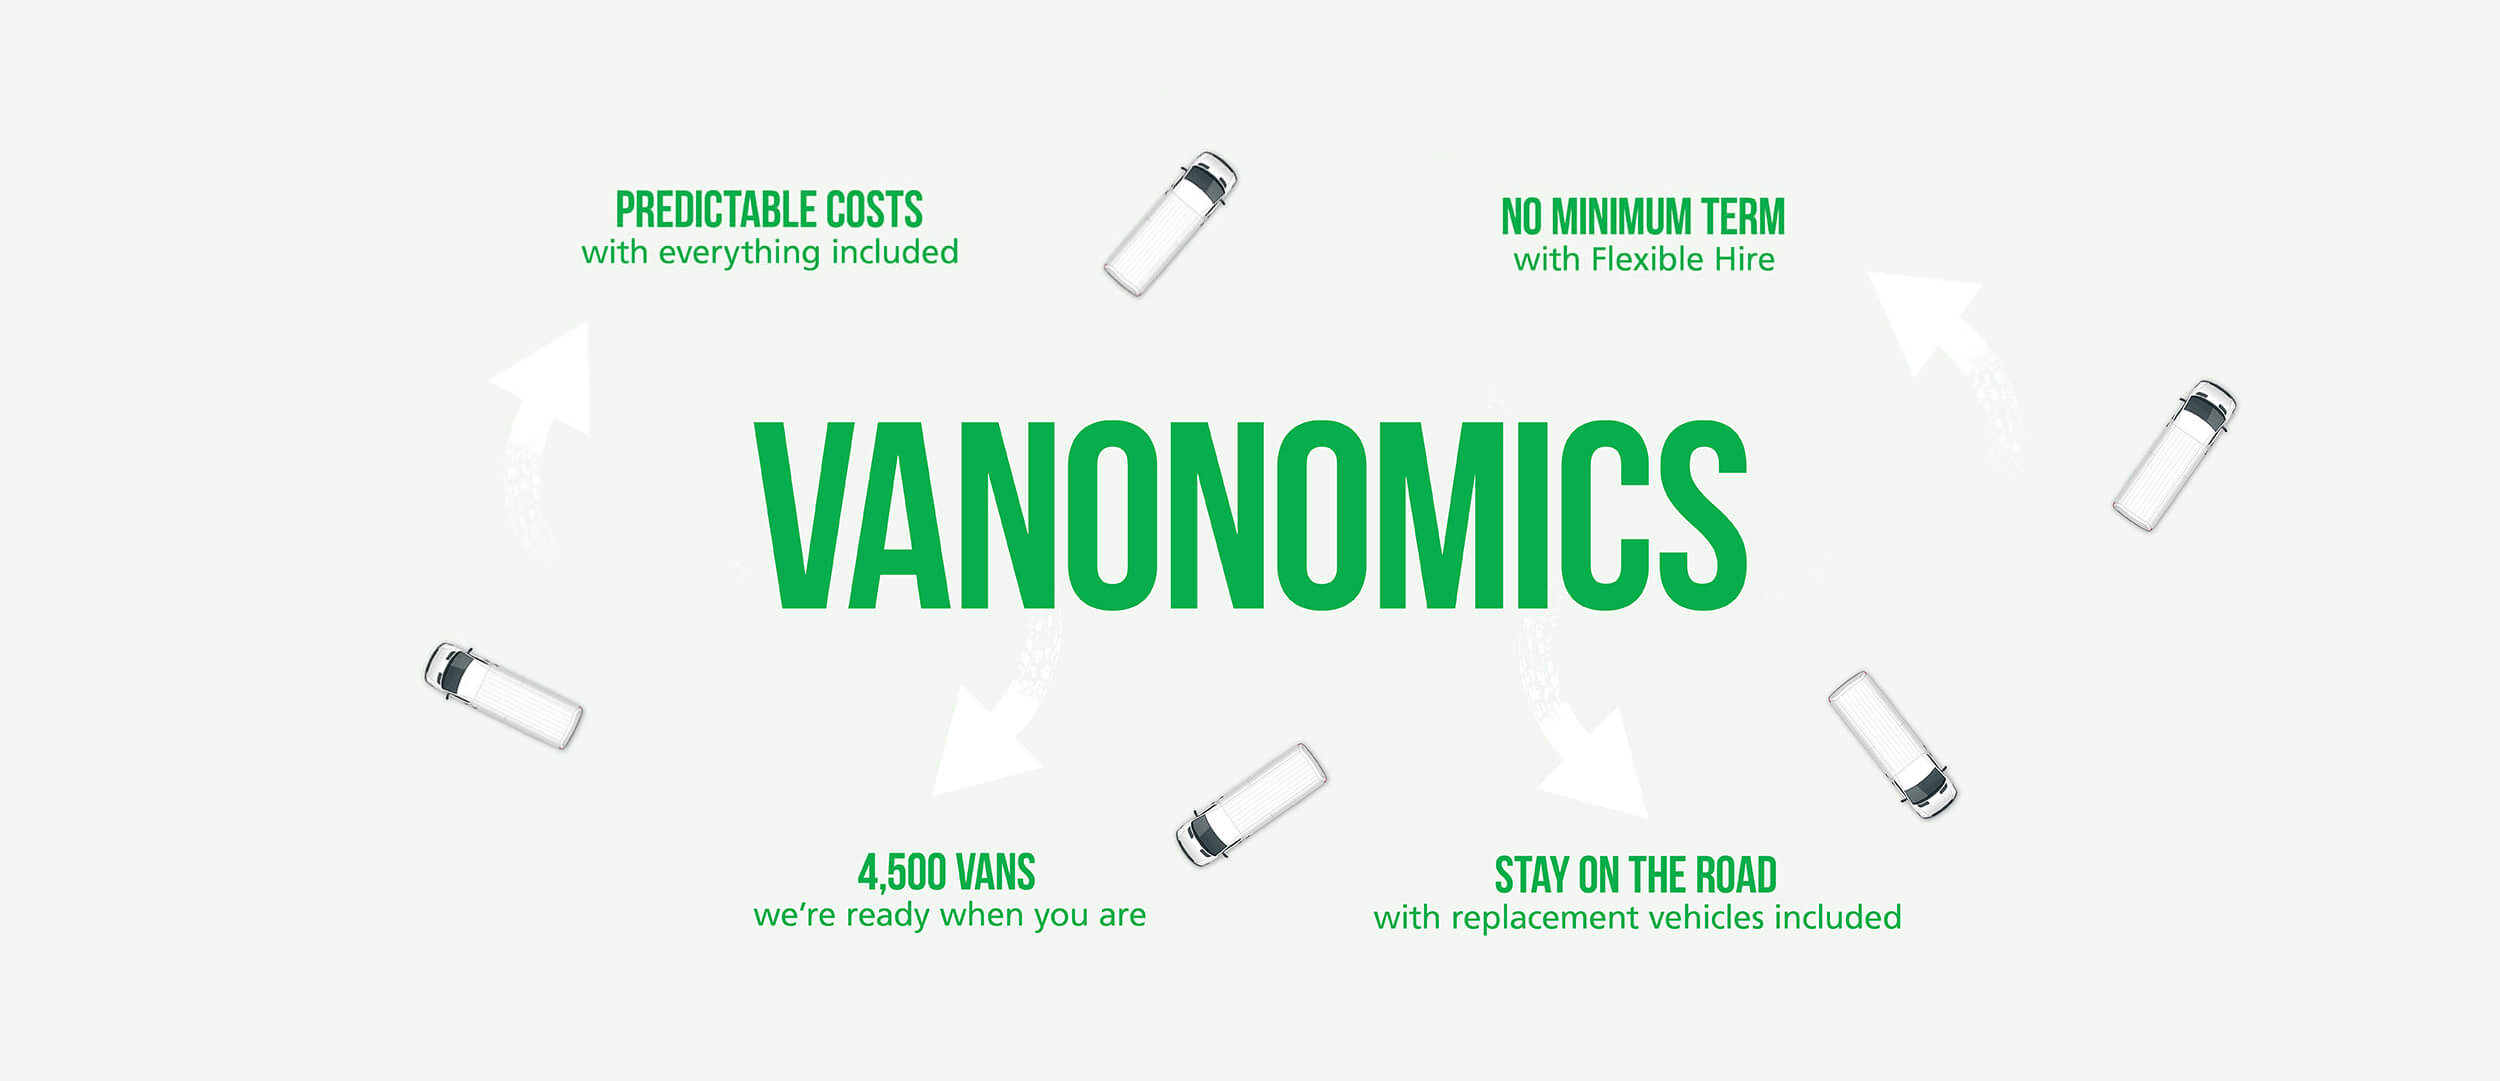 Vanonomics